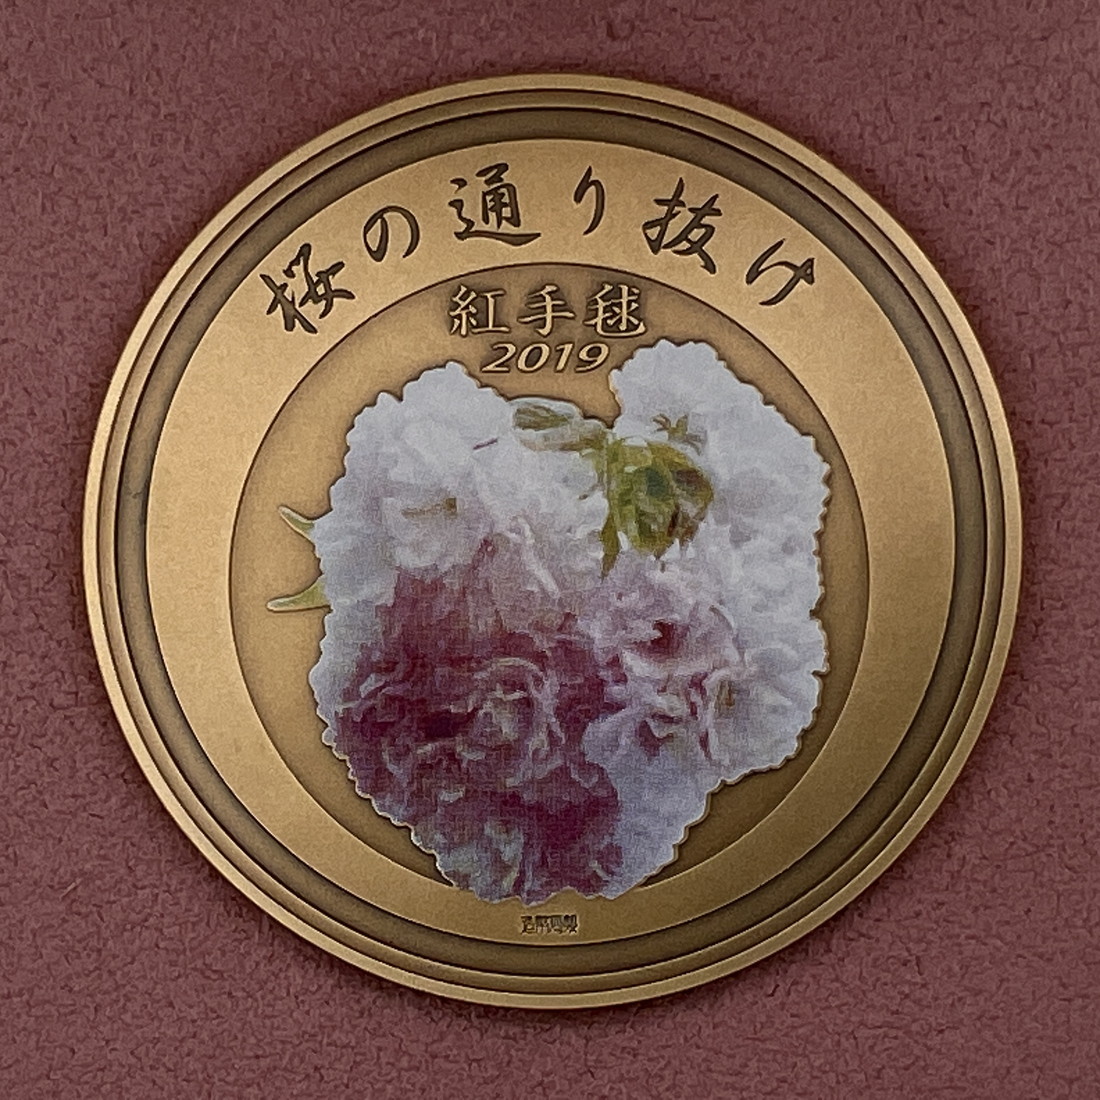 楽天市場】平成31年 桜の通り抜け記念 銅メダル『紅手毬』 造幣局 2019